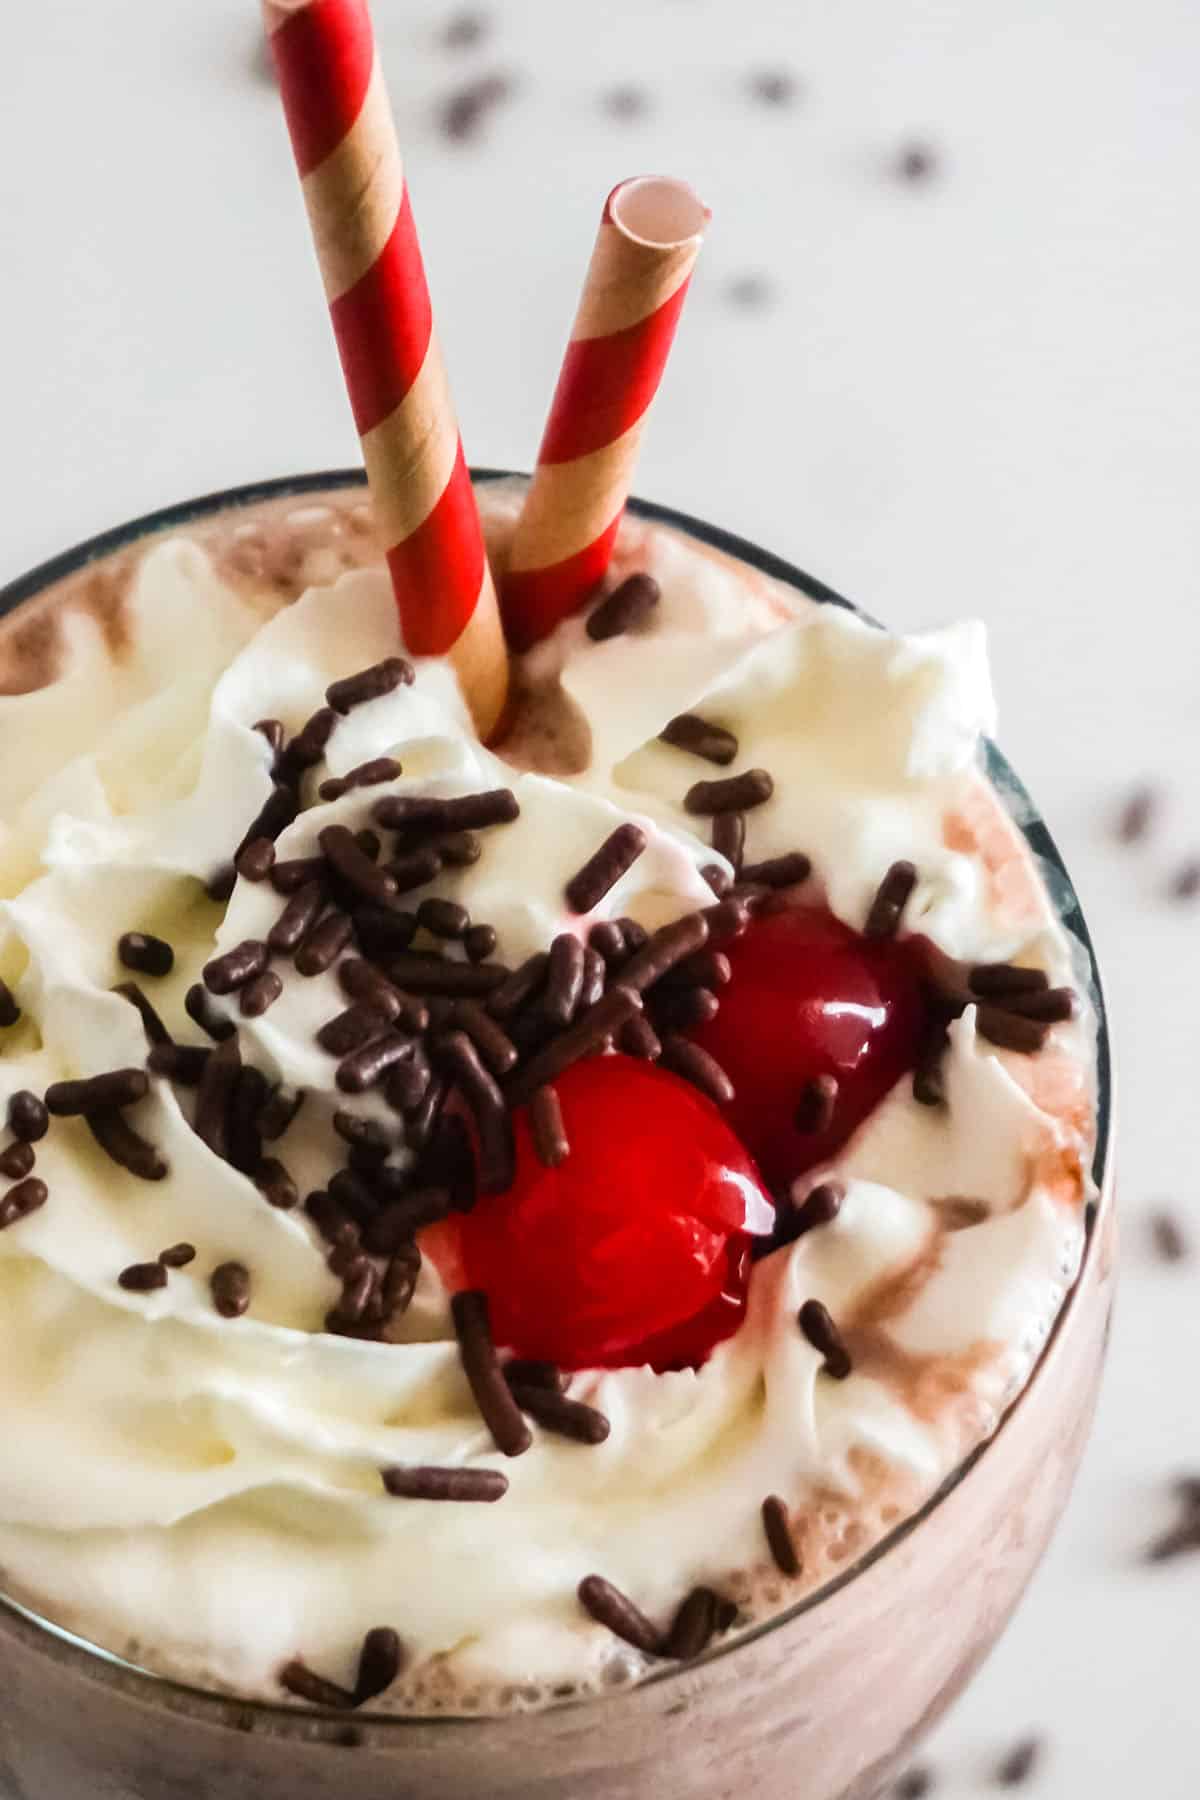 Top close up, of Chocolate Milkshake with cherries.